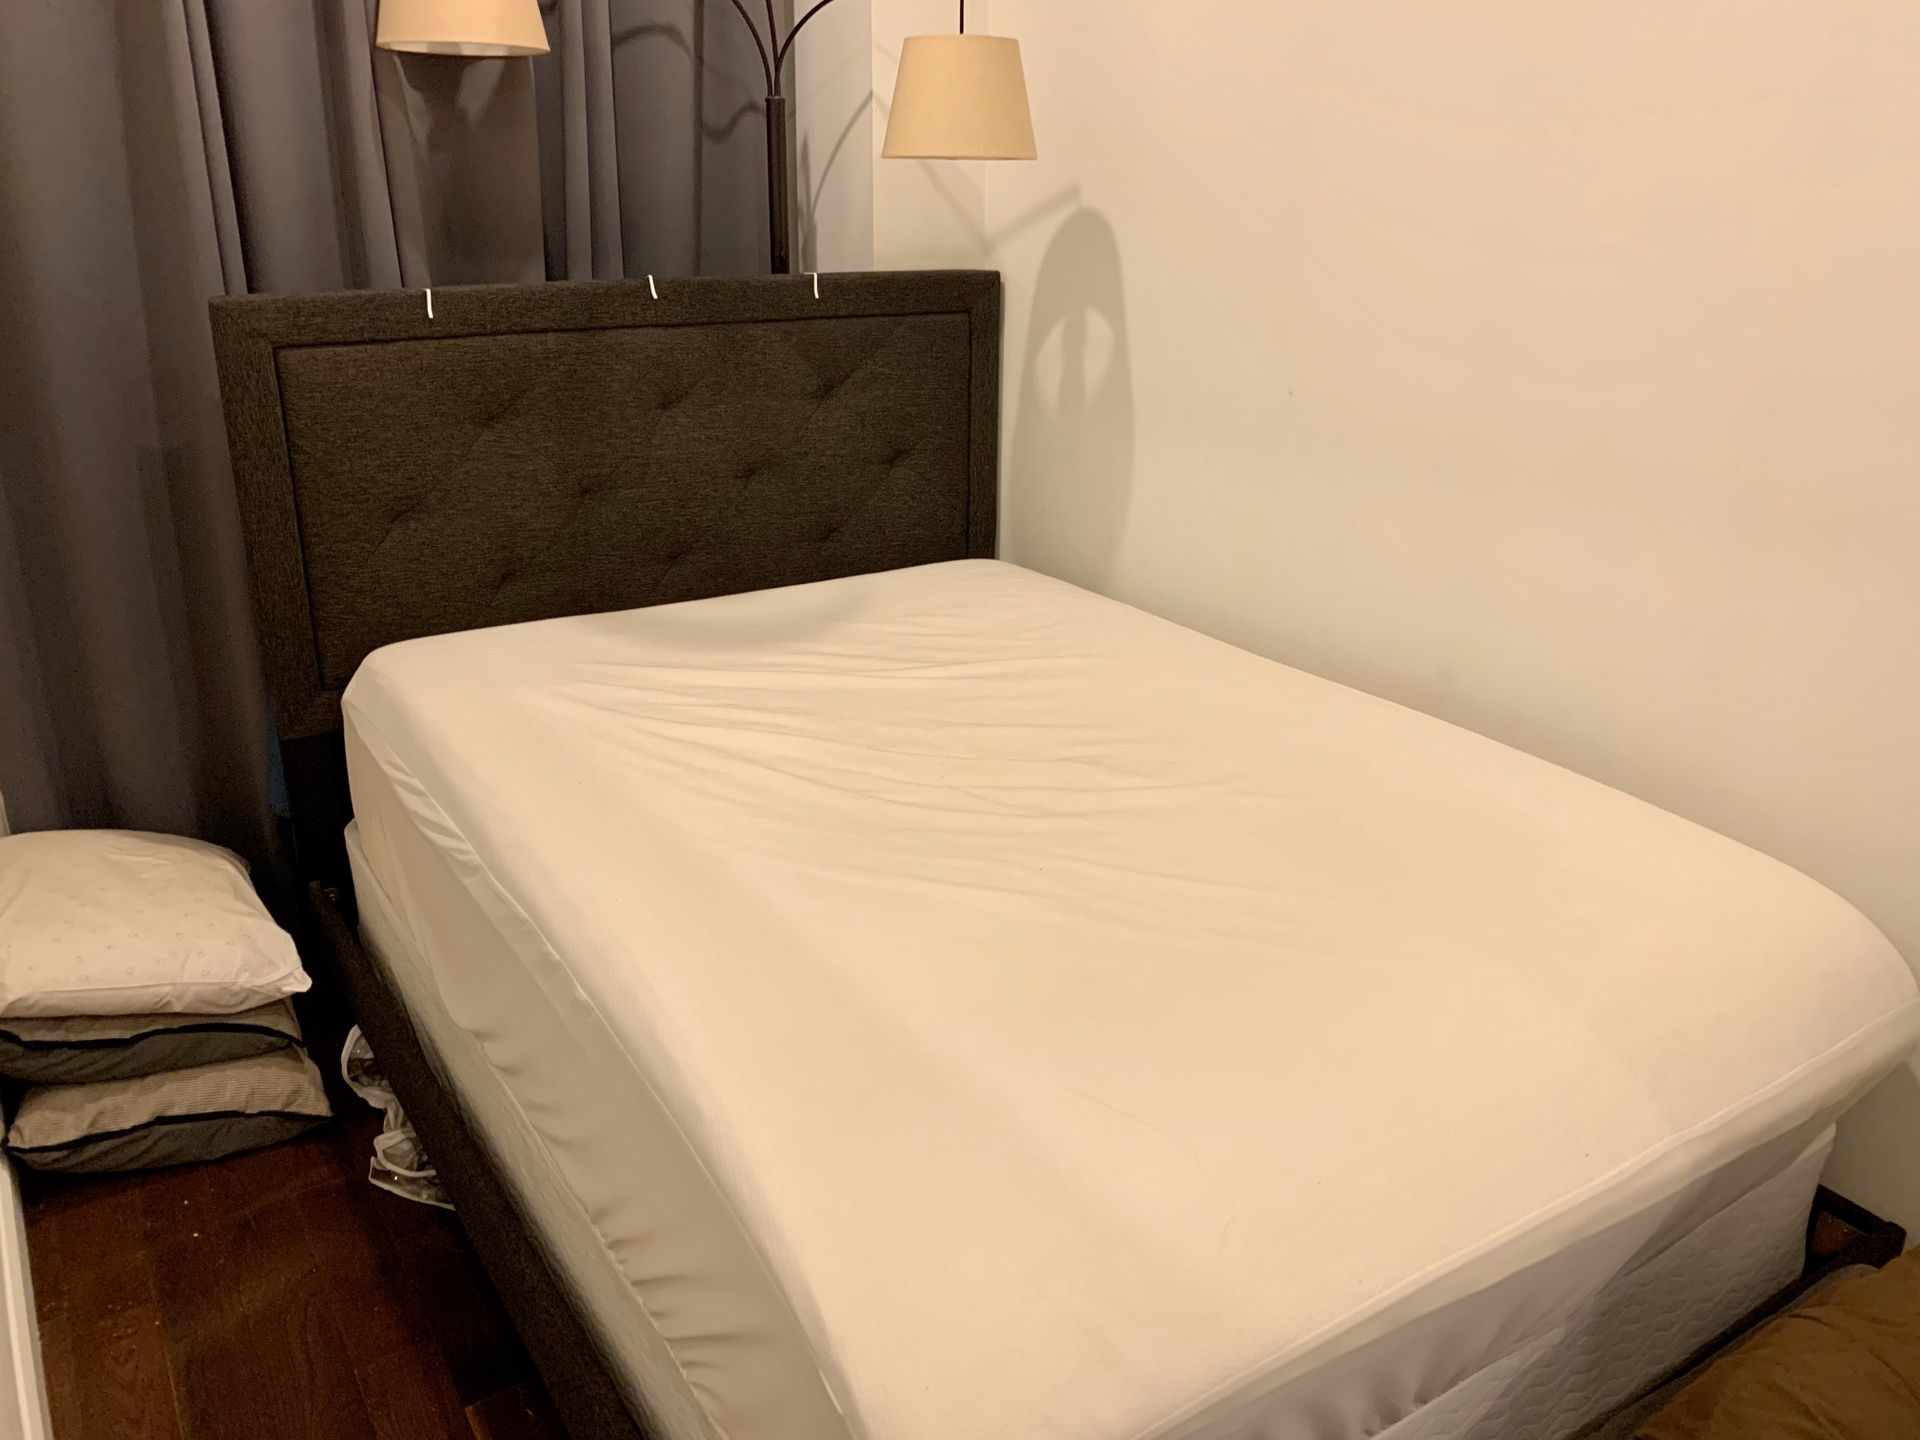 Full-Sized Bed Frame & Box Spring